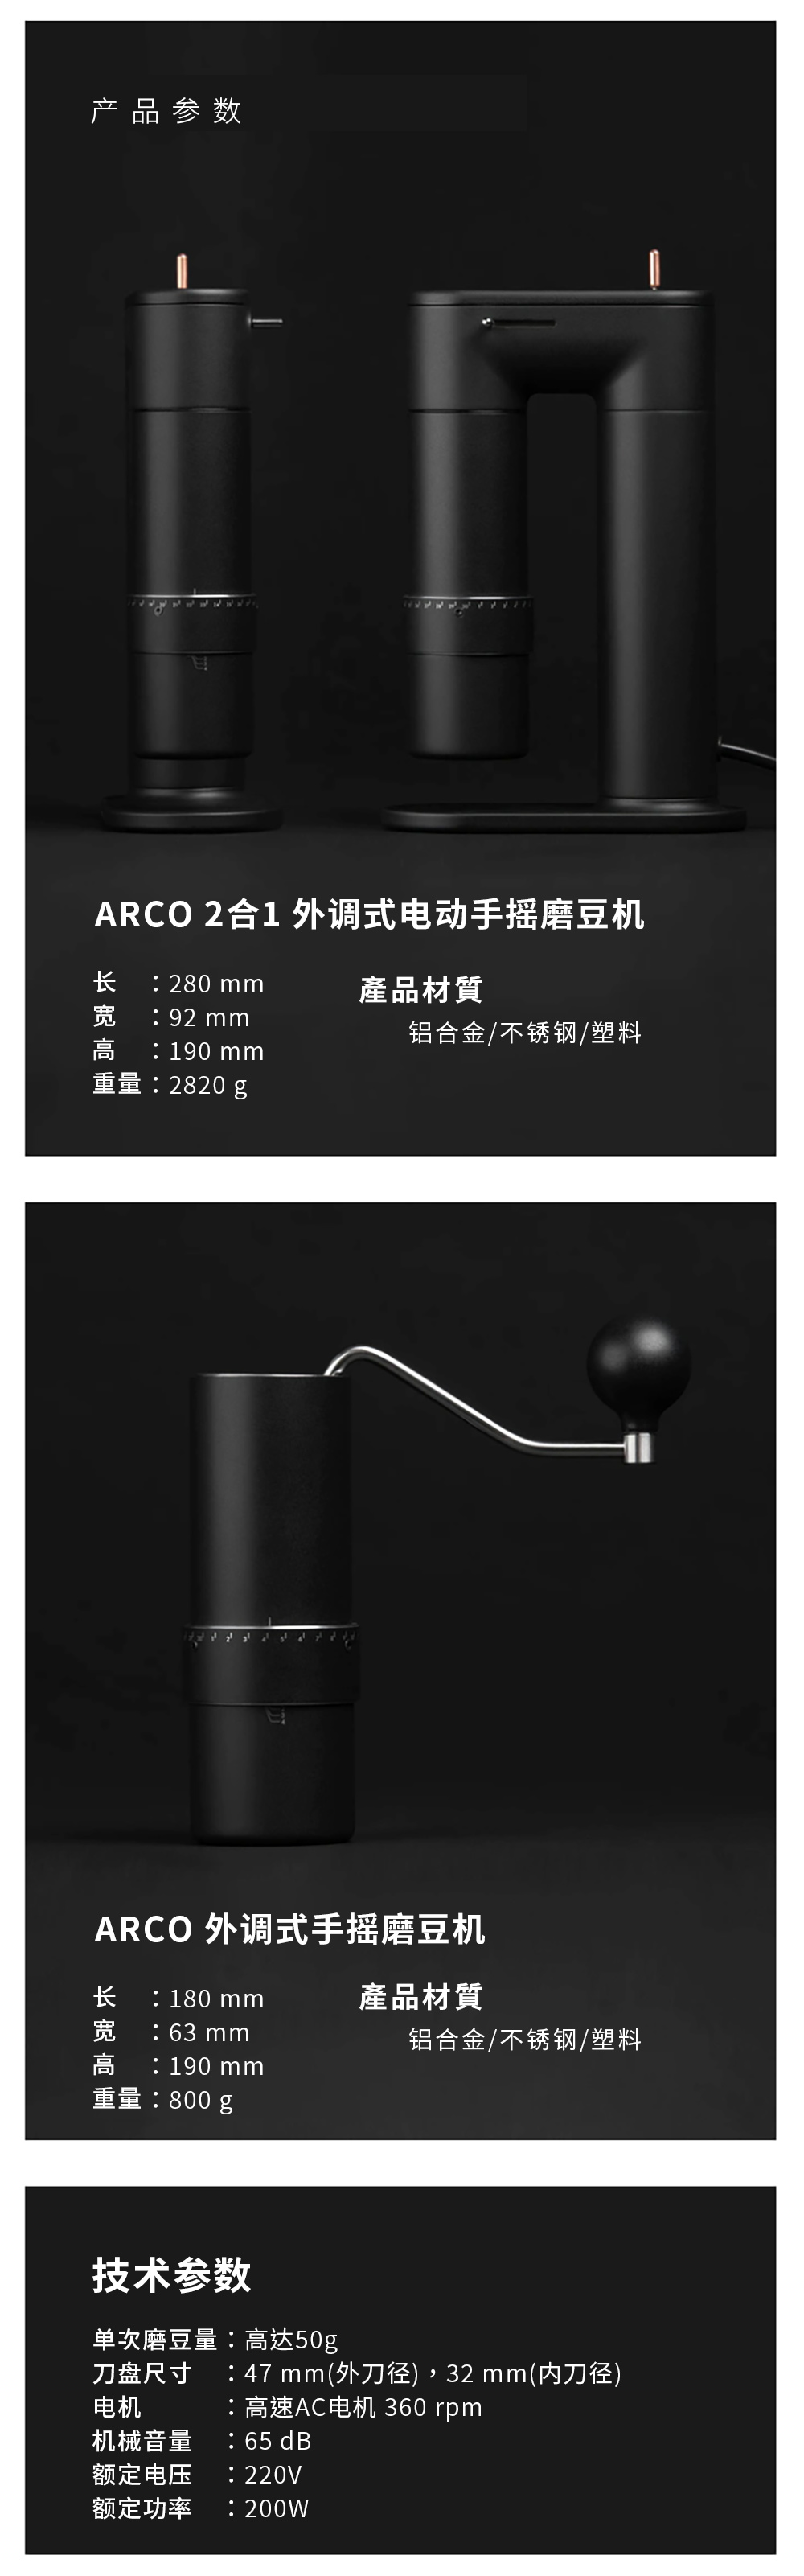 ARCO 2合1外调式电动手摇磨豆机